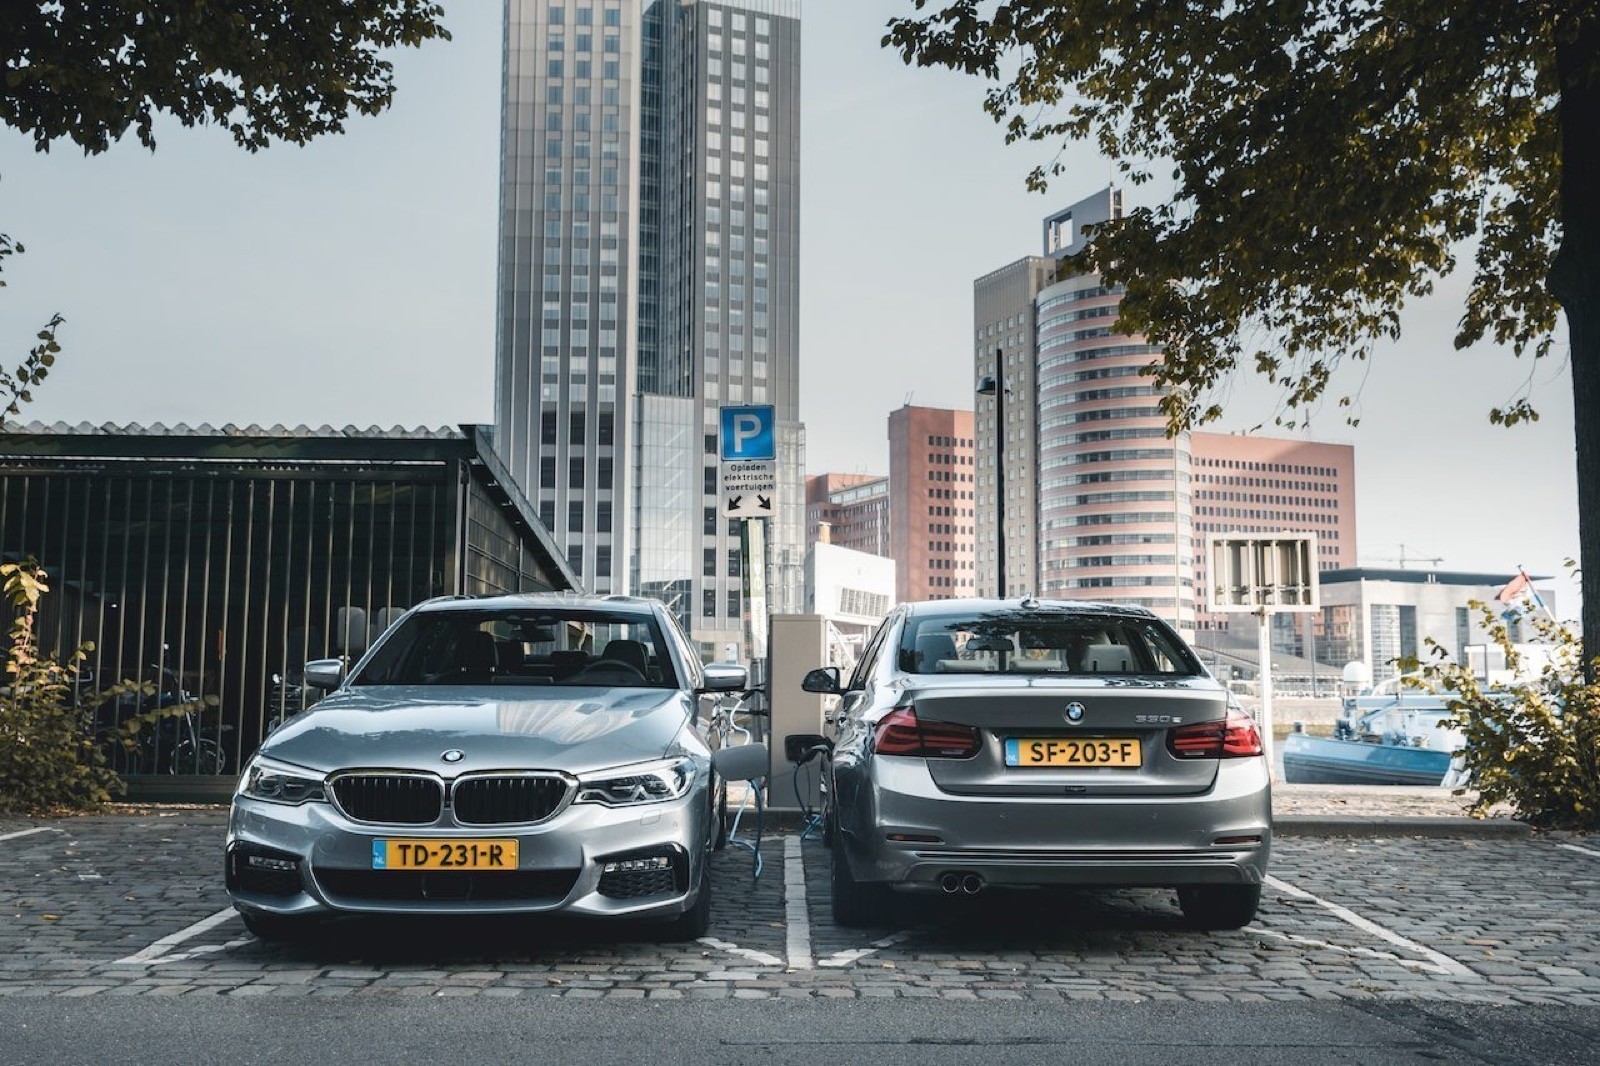 Munching Bang om te sterven Voorbijgaand BMW lost probleem laadpaalklevers op. Hint: jij bent het probleem -  Autoblog.nl